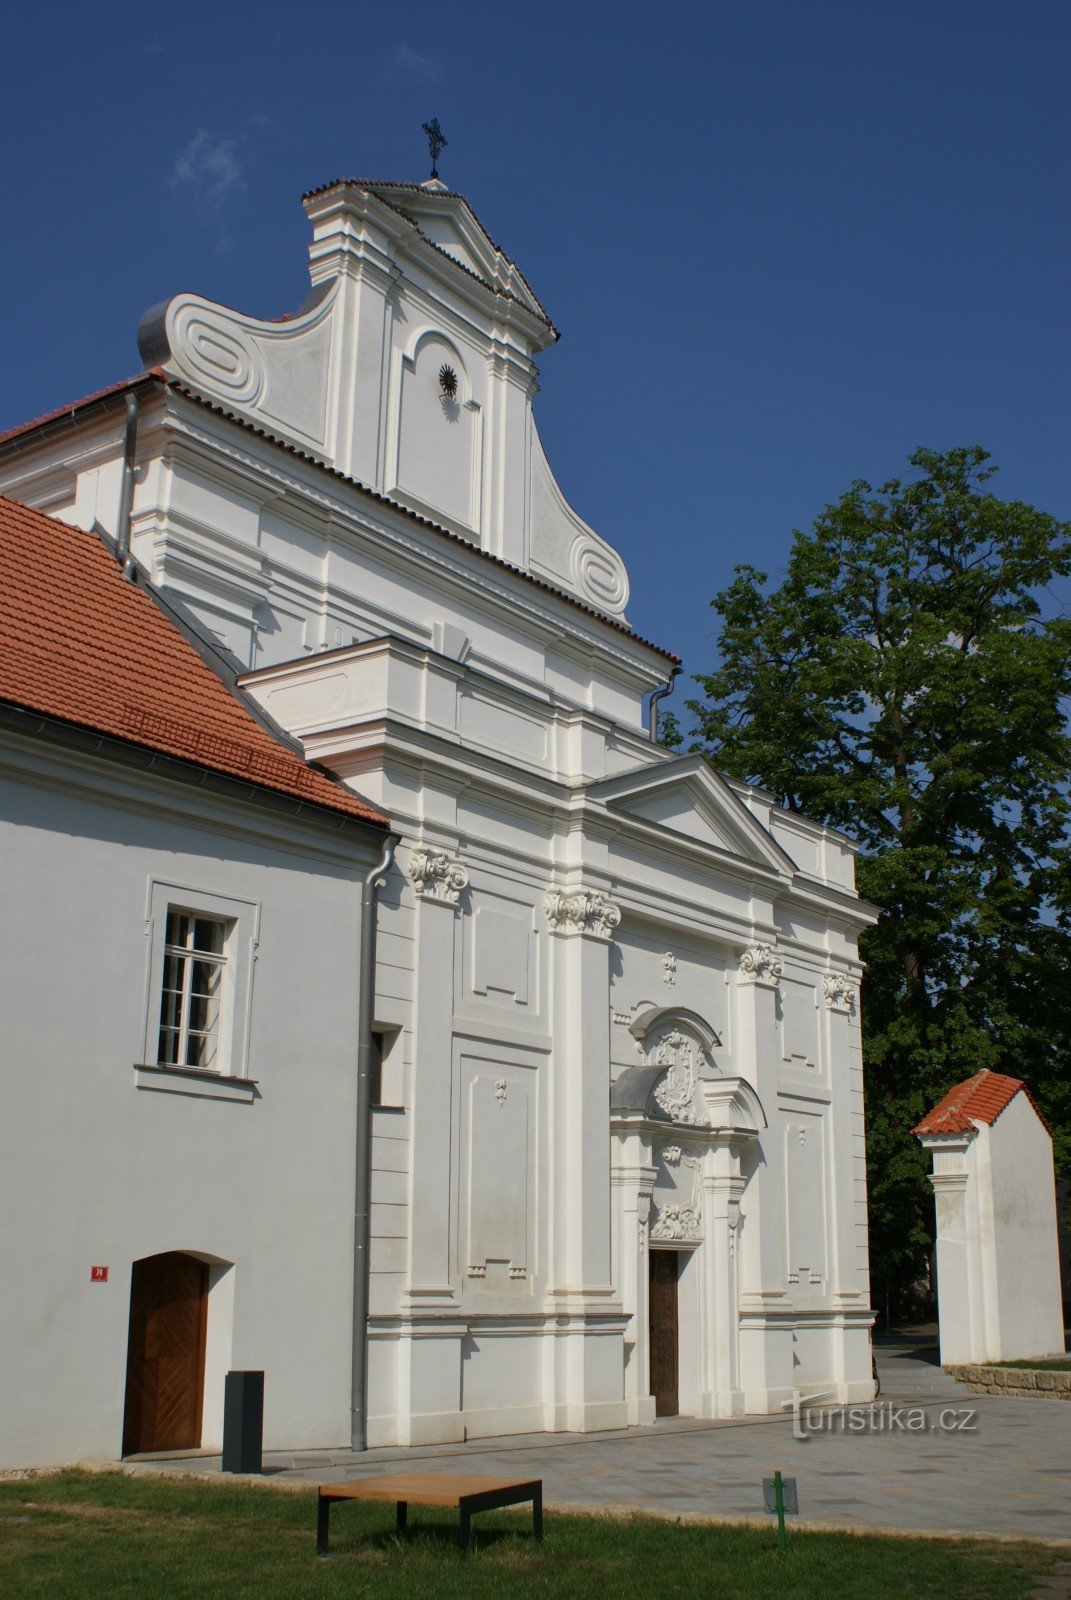 Mladá Boleslav - Pyhän Nikolauksen kirkko. Bonaventures ja piaristinen luostari